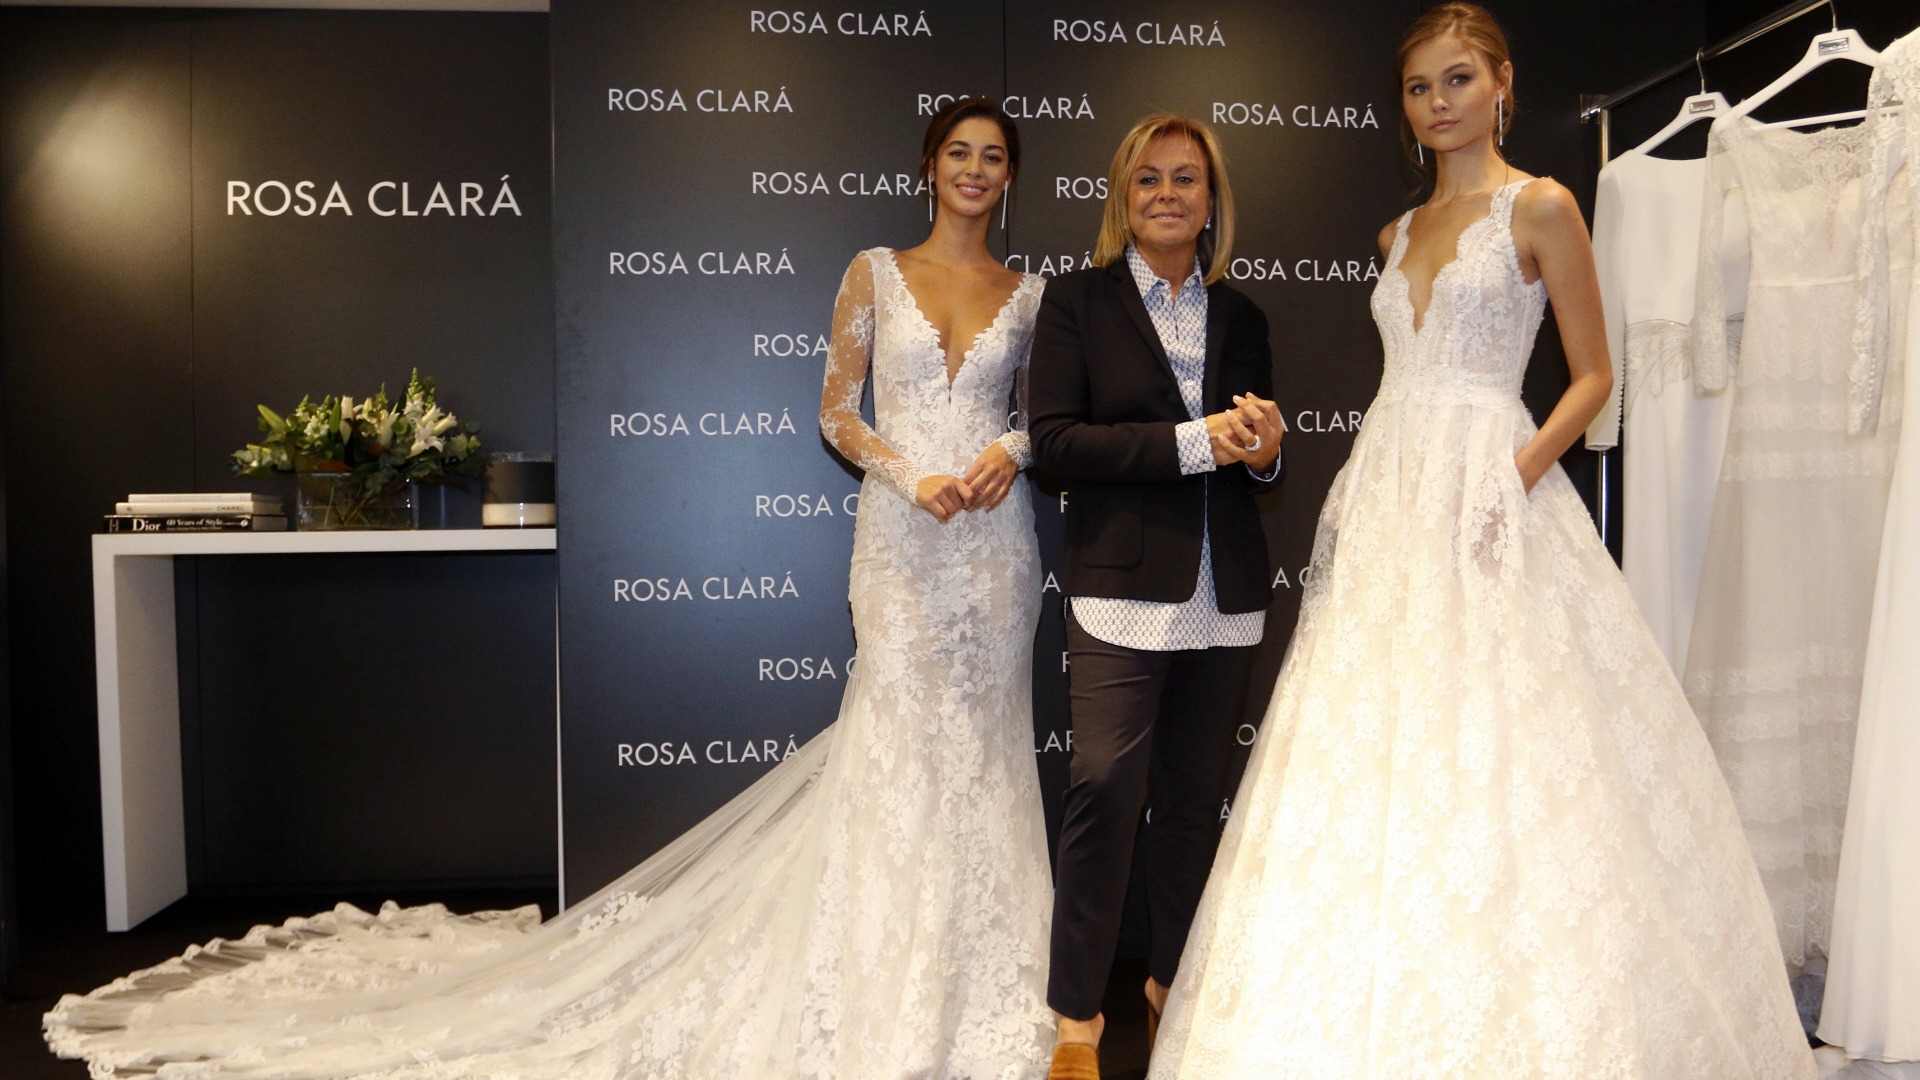 Rosa Clará, 25 años en el mundo de la moda nos presenta a su sucesor